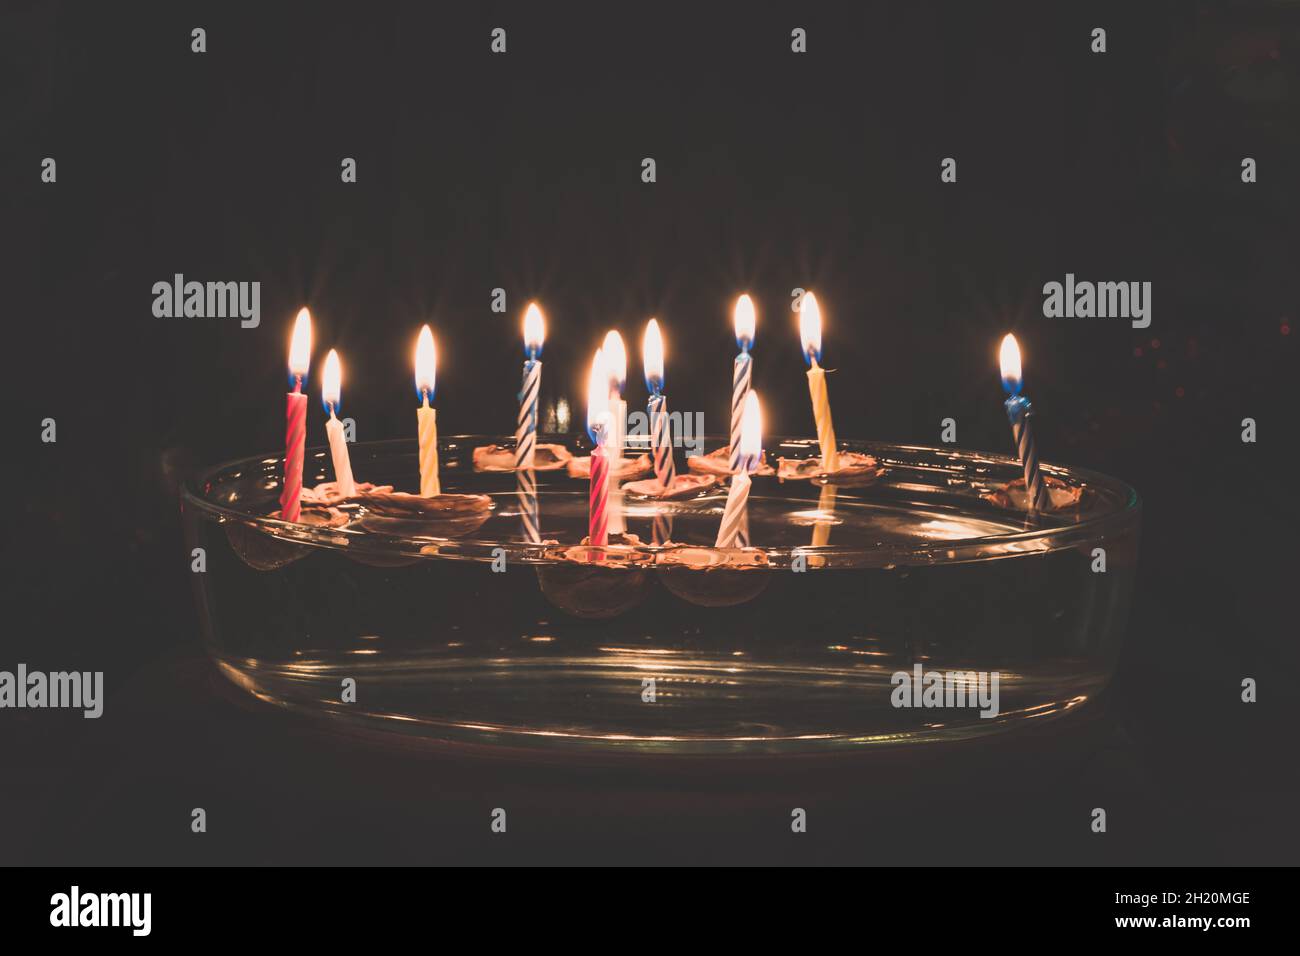 Weihnachtssymbole, Kerzen in Nussschalen, die auf dem Wasser schweben, Traditionen und Kostüme Stockfoto